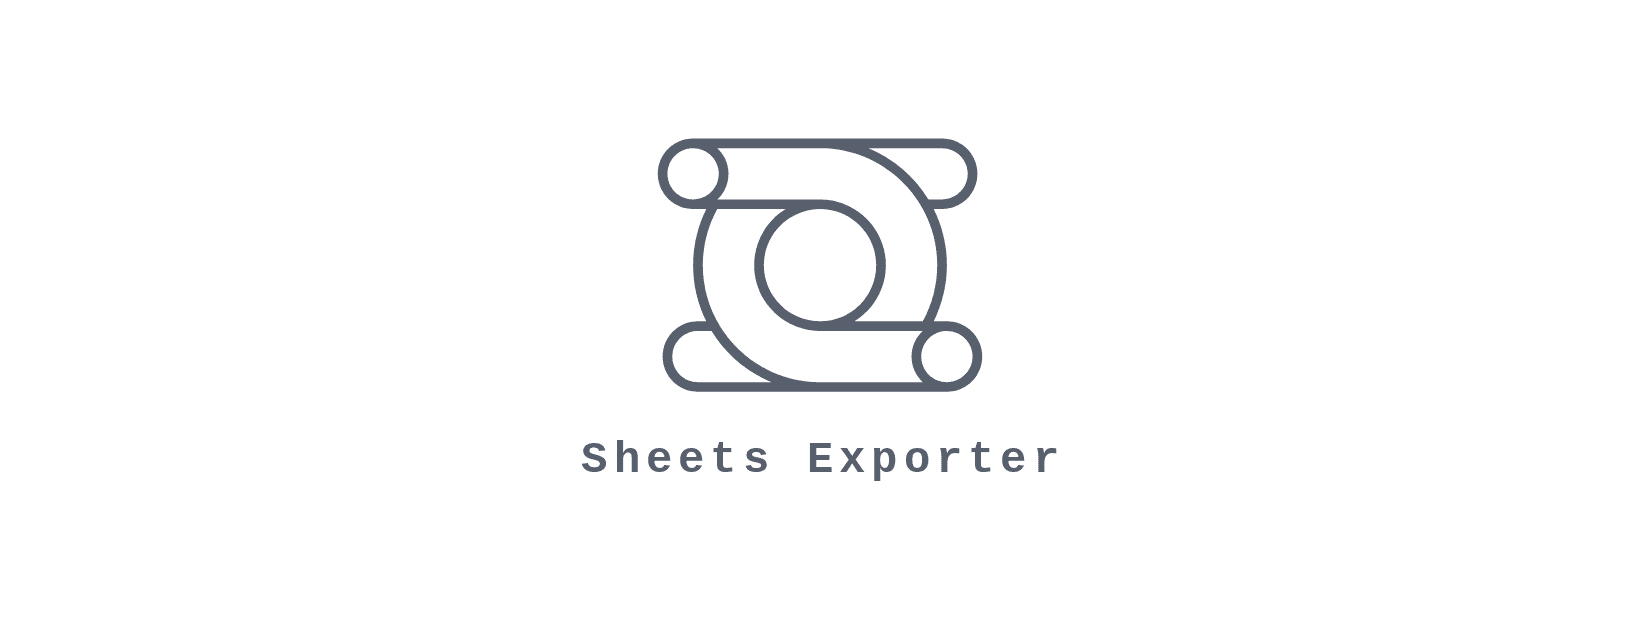 exporter_logo